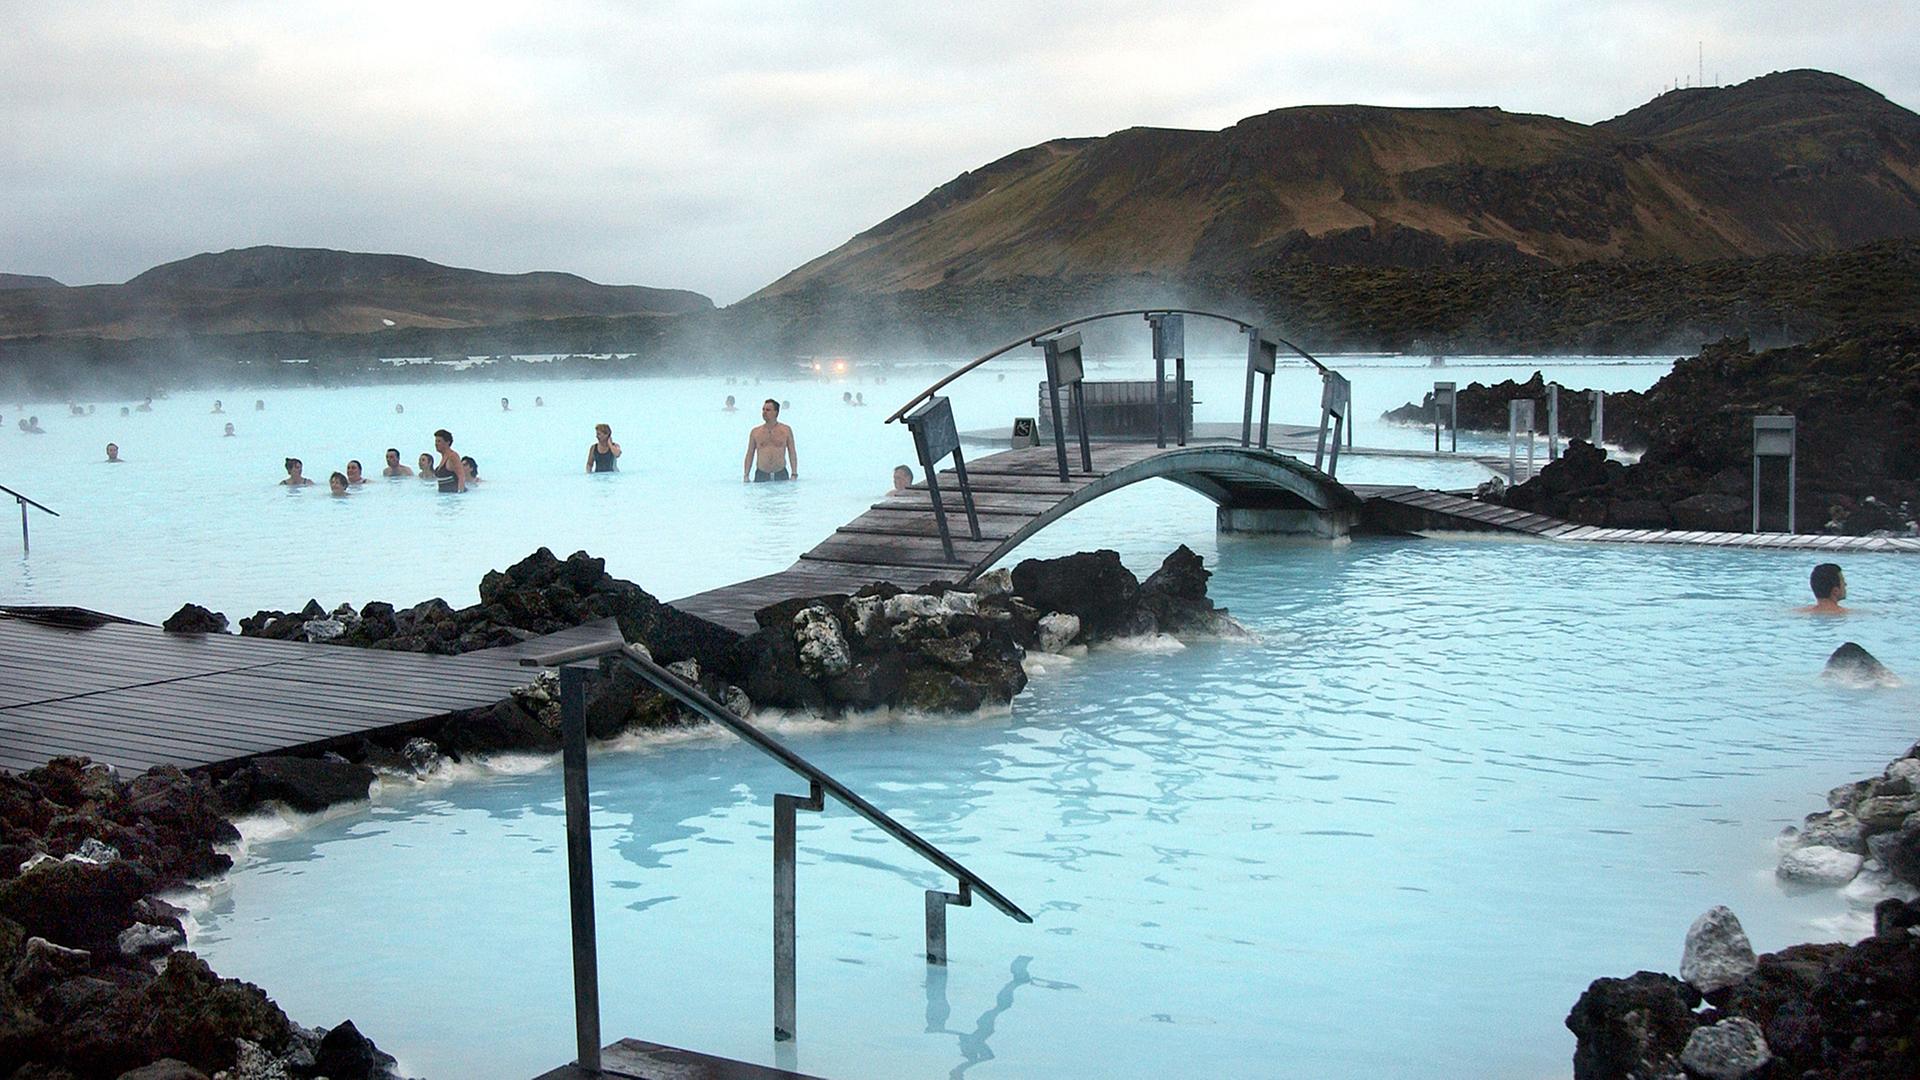 Badende vergnügen sich in dem türkisfarbenen Wasser der Blauen Lagune bei Reykjavík, Island.